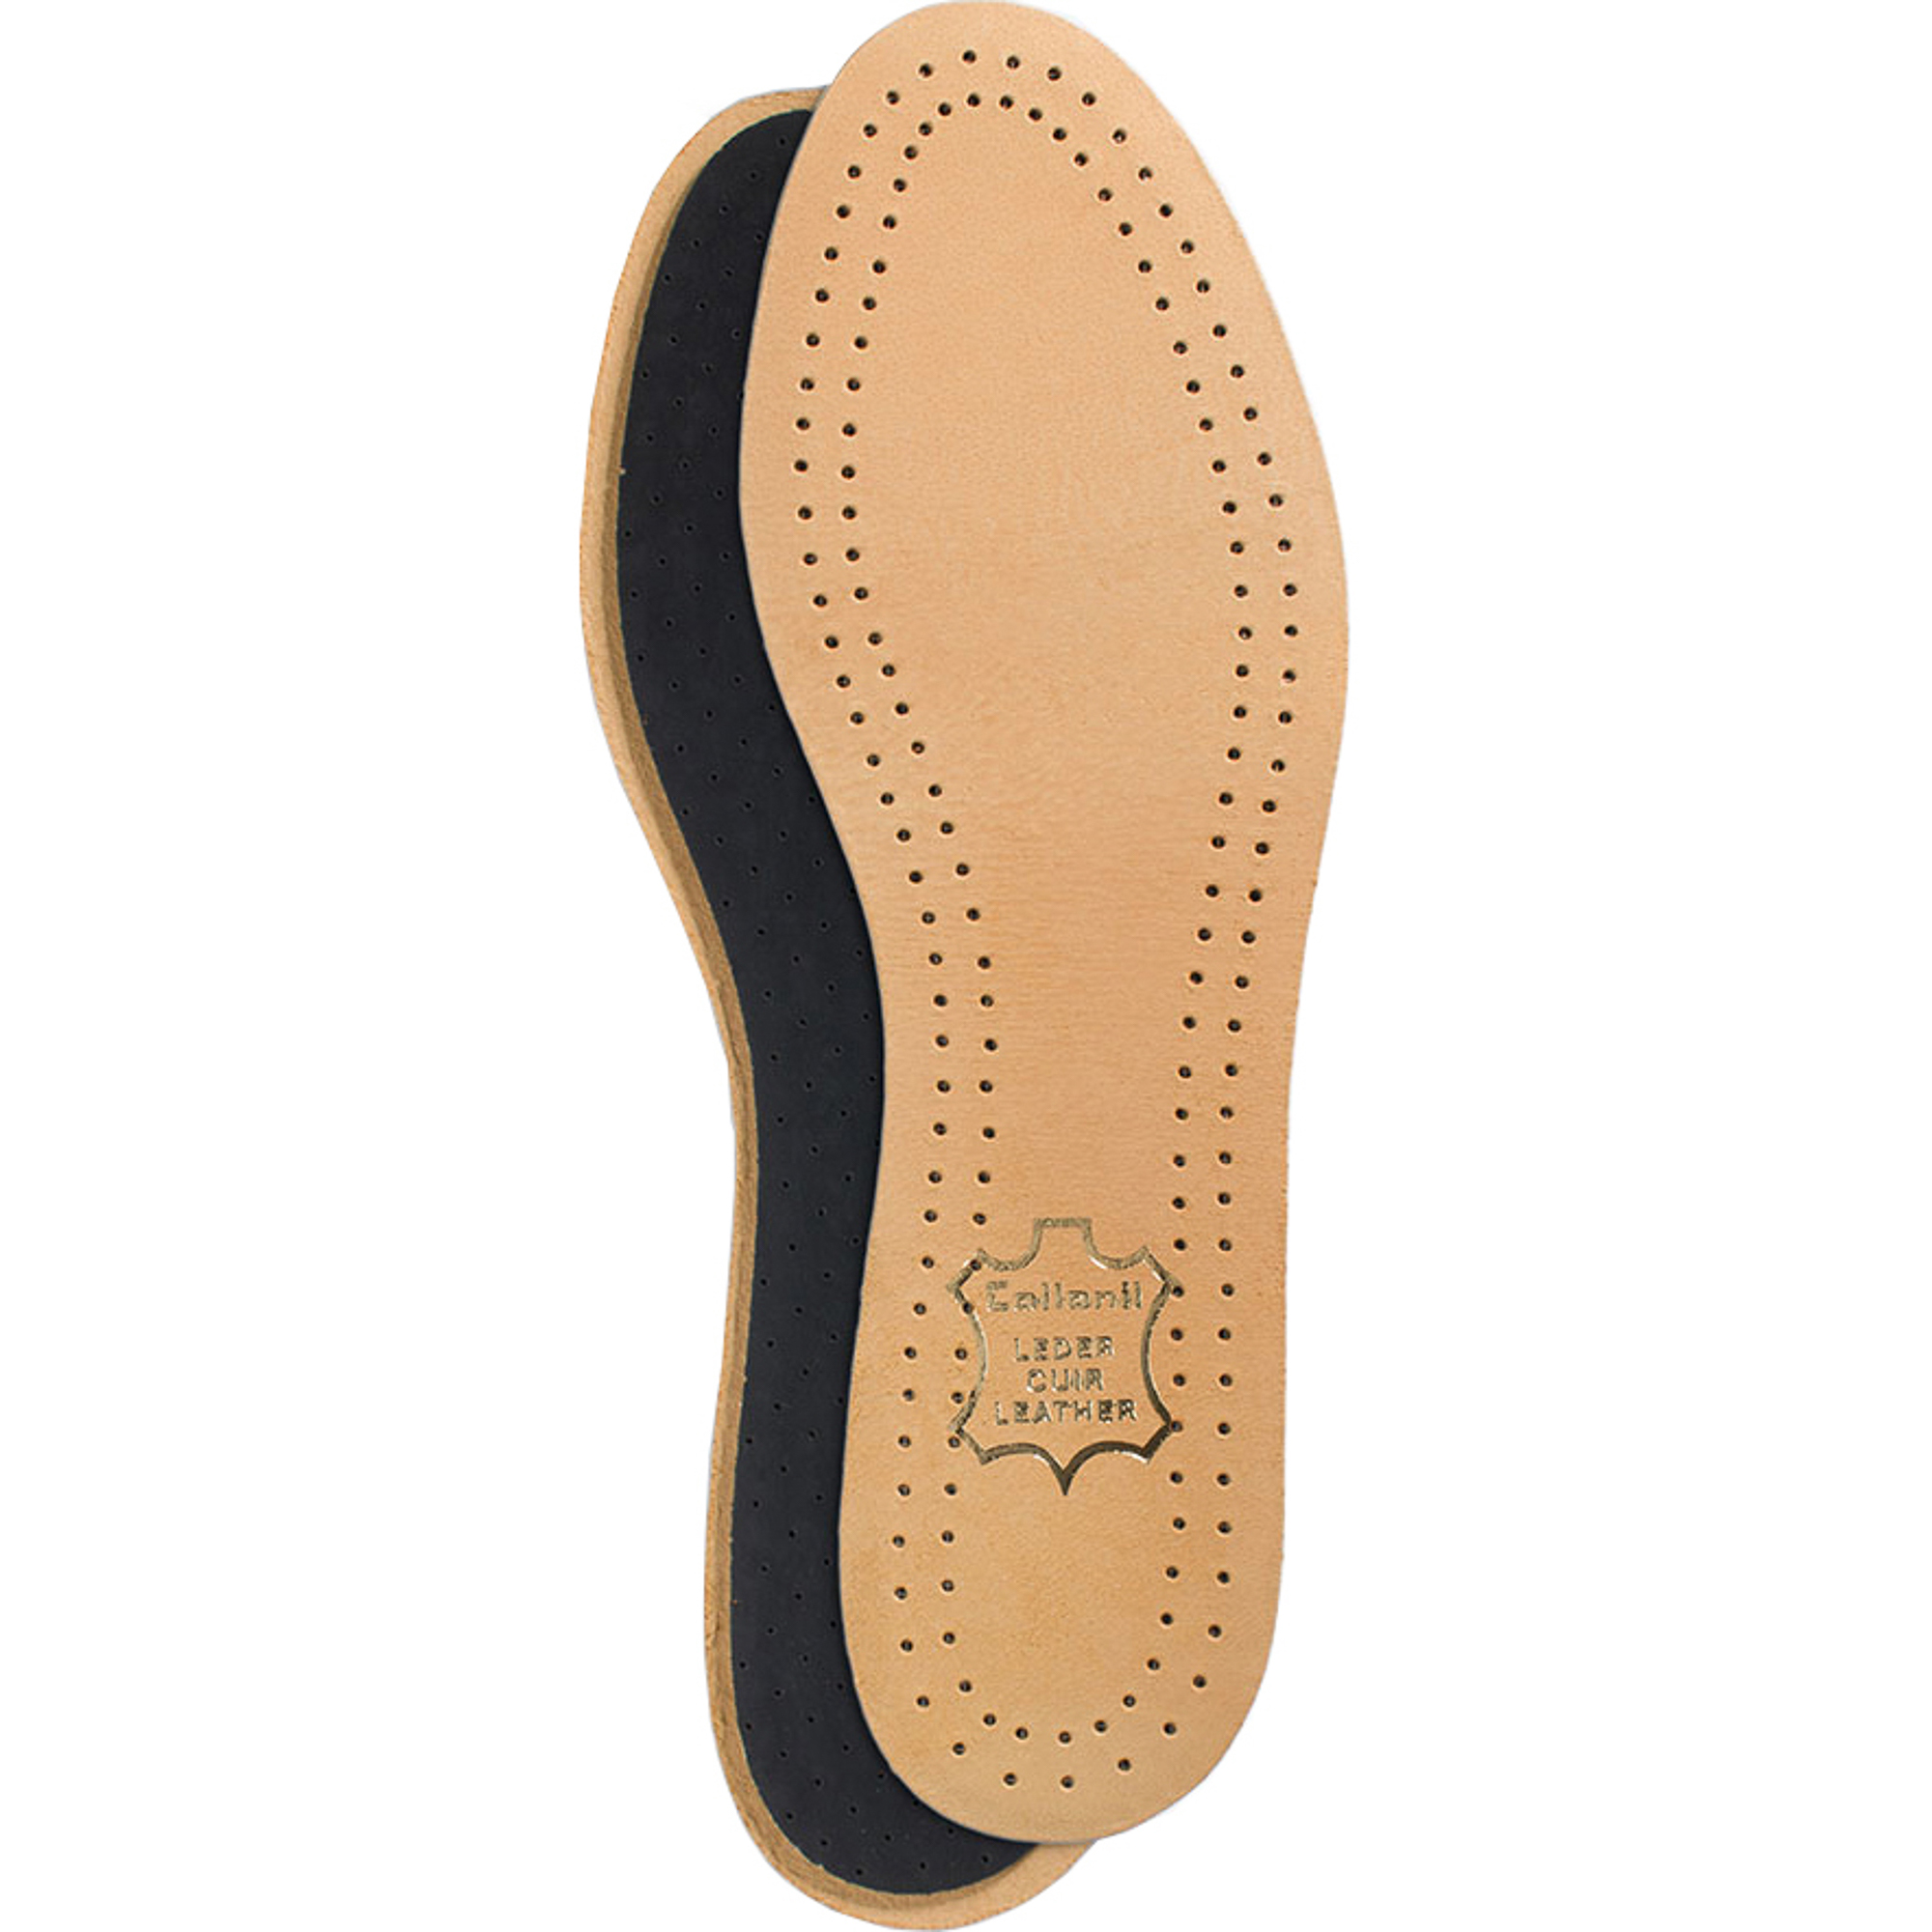 Стельки для обуви Collonil Luxor размер 46 стельки scholl gelactiv для открытой обуви